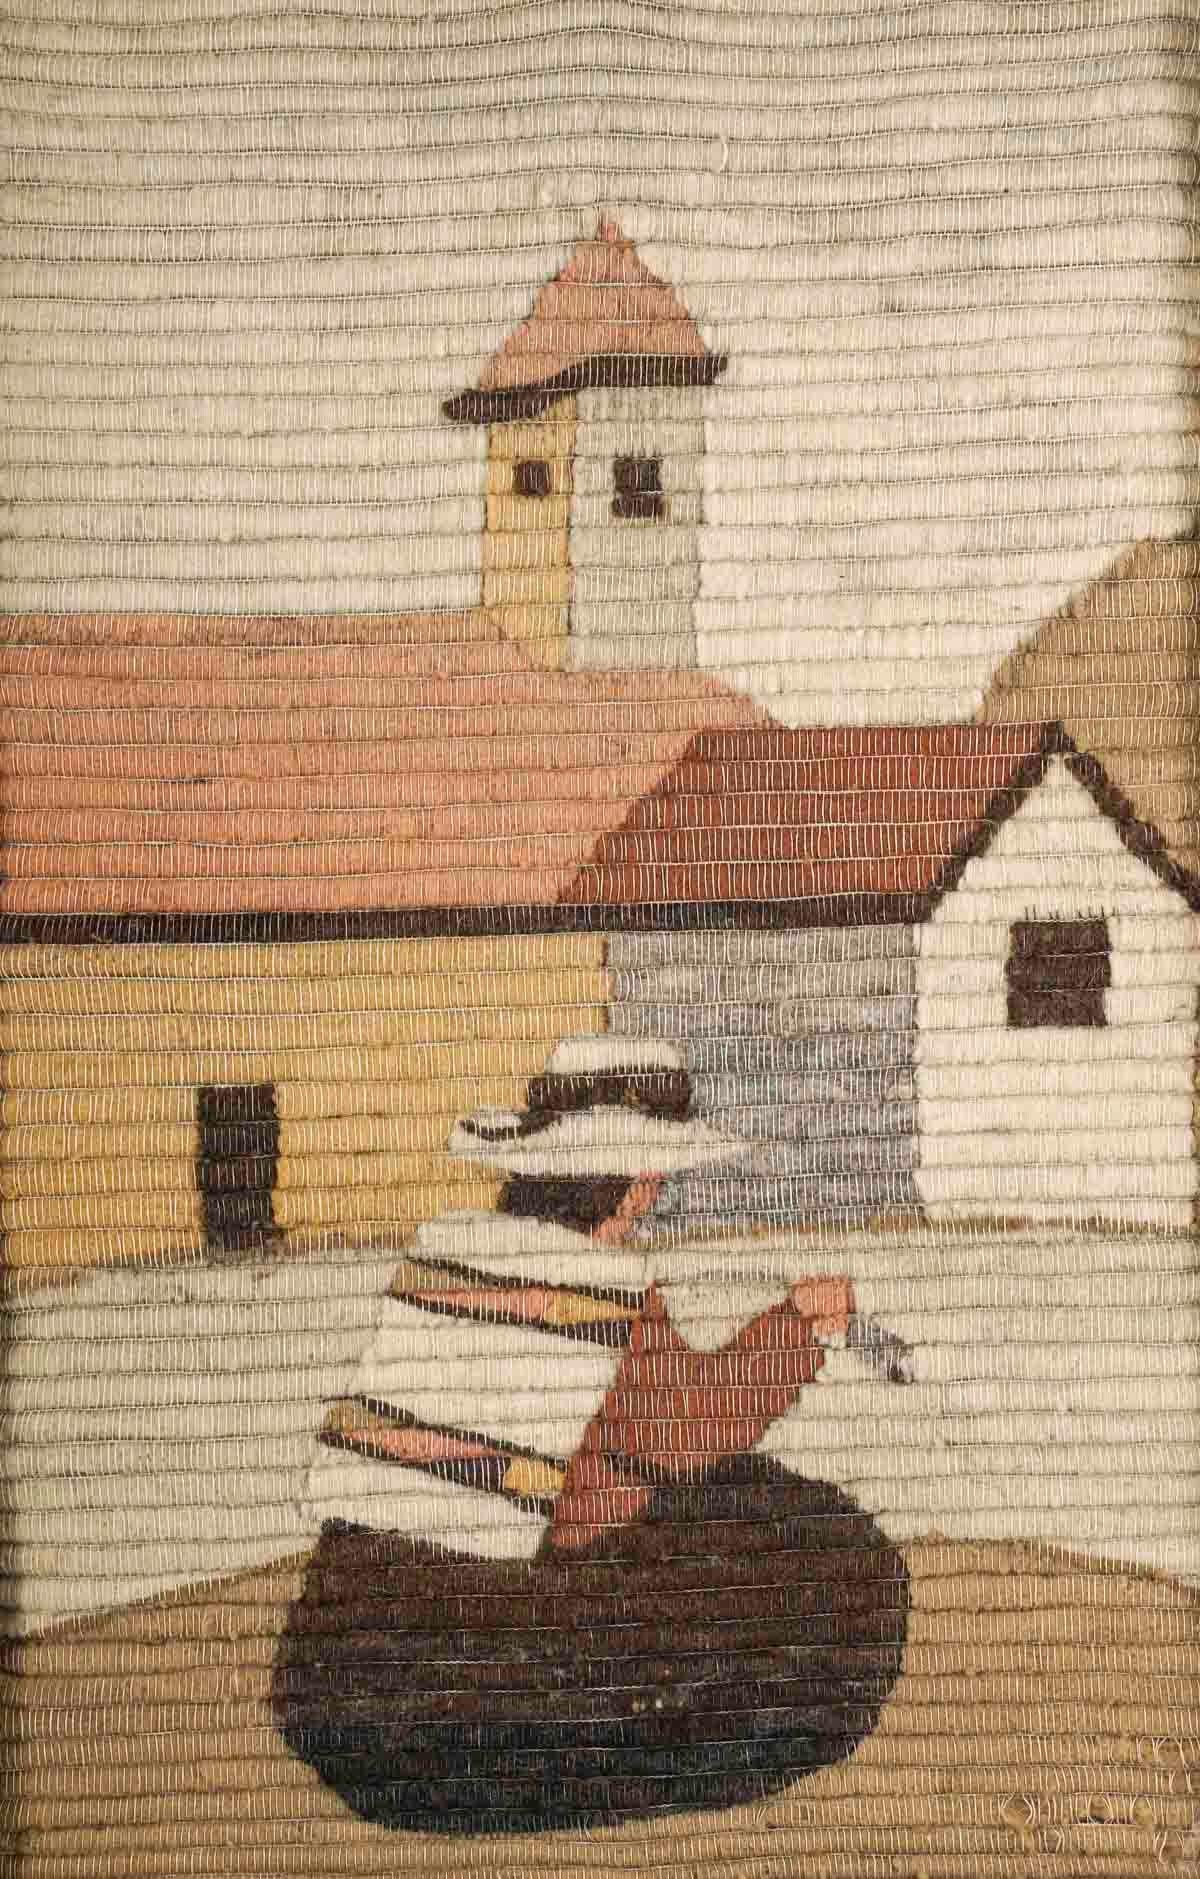 Wandteppich des 20. Jahrhunderts, gerahmt in einem geschnitzten Rahmen.

Wandteppich, gerahmt in einem geschnitzten Rahmen, 20.
Wandteppich: H: 71cm, B: 46cm
Rahmen: H: 93cm, B: 69cm, T: 4cm